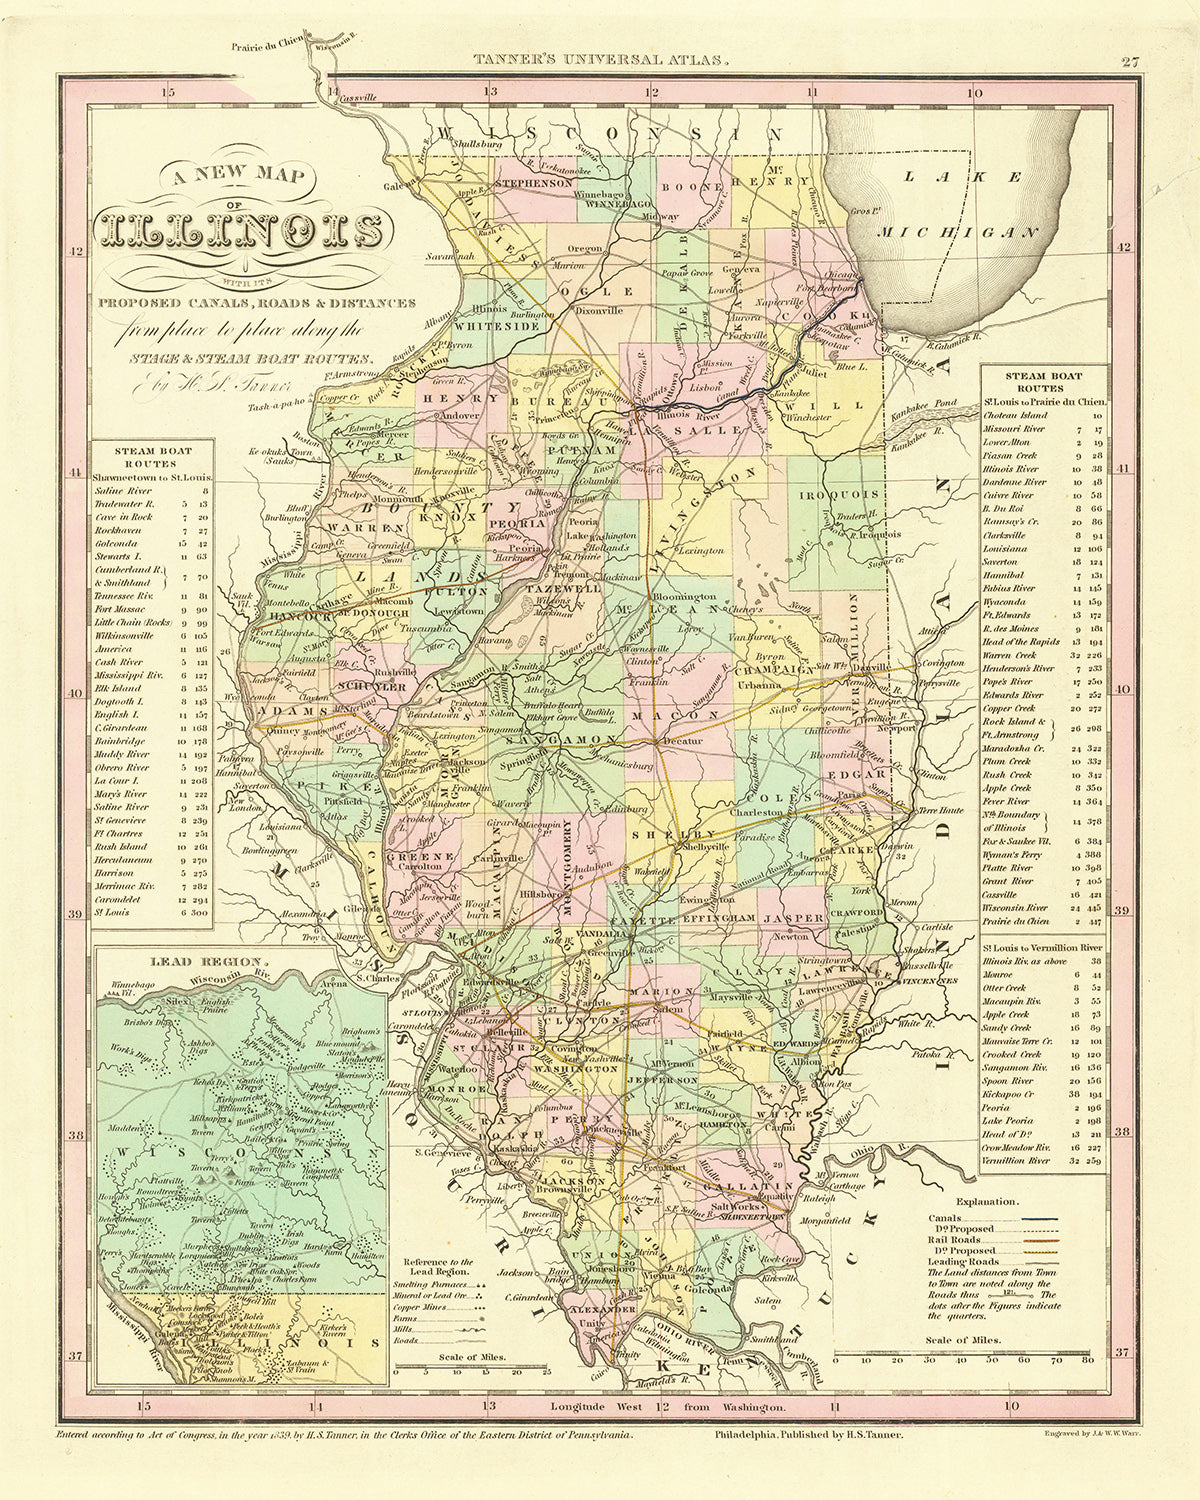 Alte Karte von Illinois von H. S. Tanner, 1836: Chicago, Aurora, Rockford, Joliet, Naperville, Straßen, Eisenbahn, Kanäle